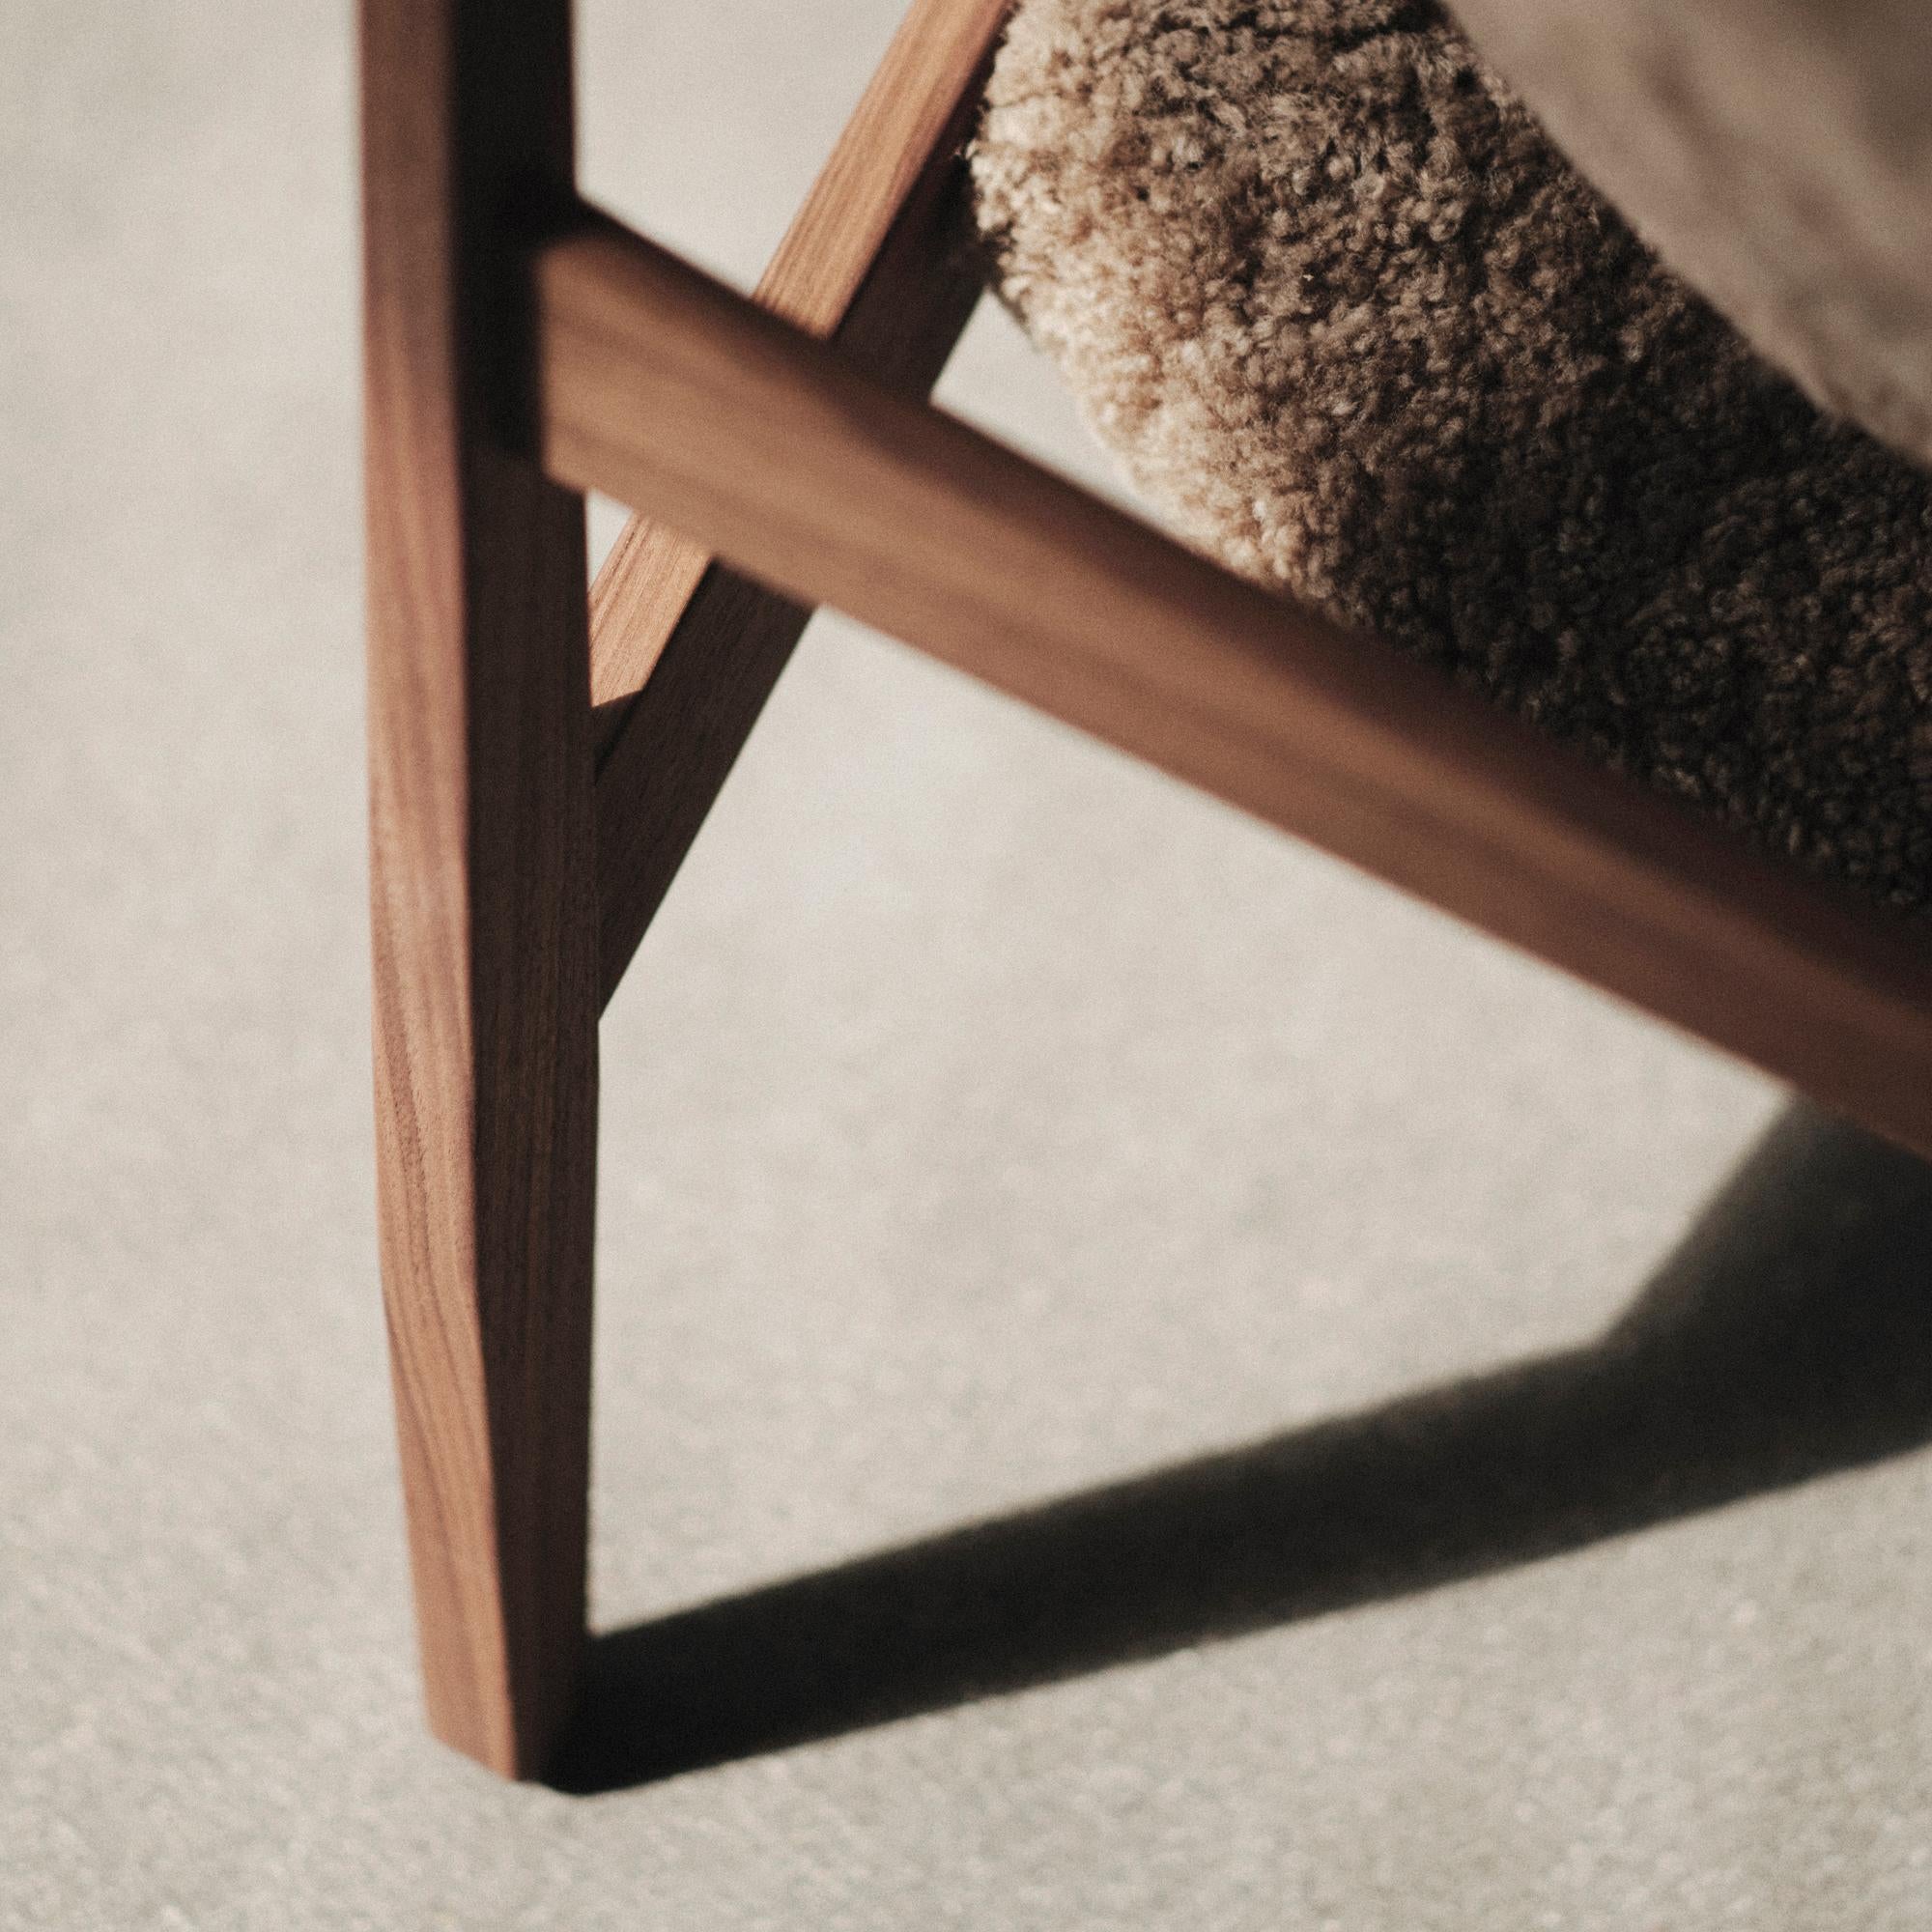 Ib Kofod-Larsen Knitting Lounge Chair, Walnut Base with Sheepskin, Nougat For Sale 6